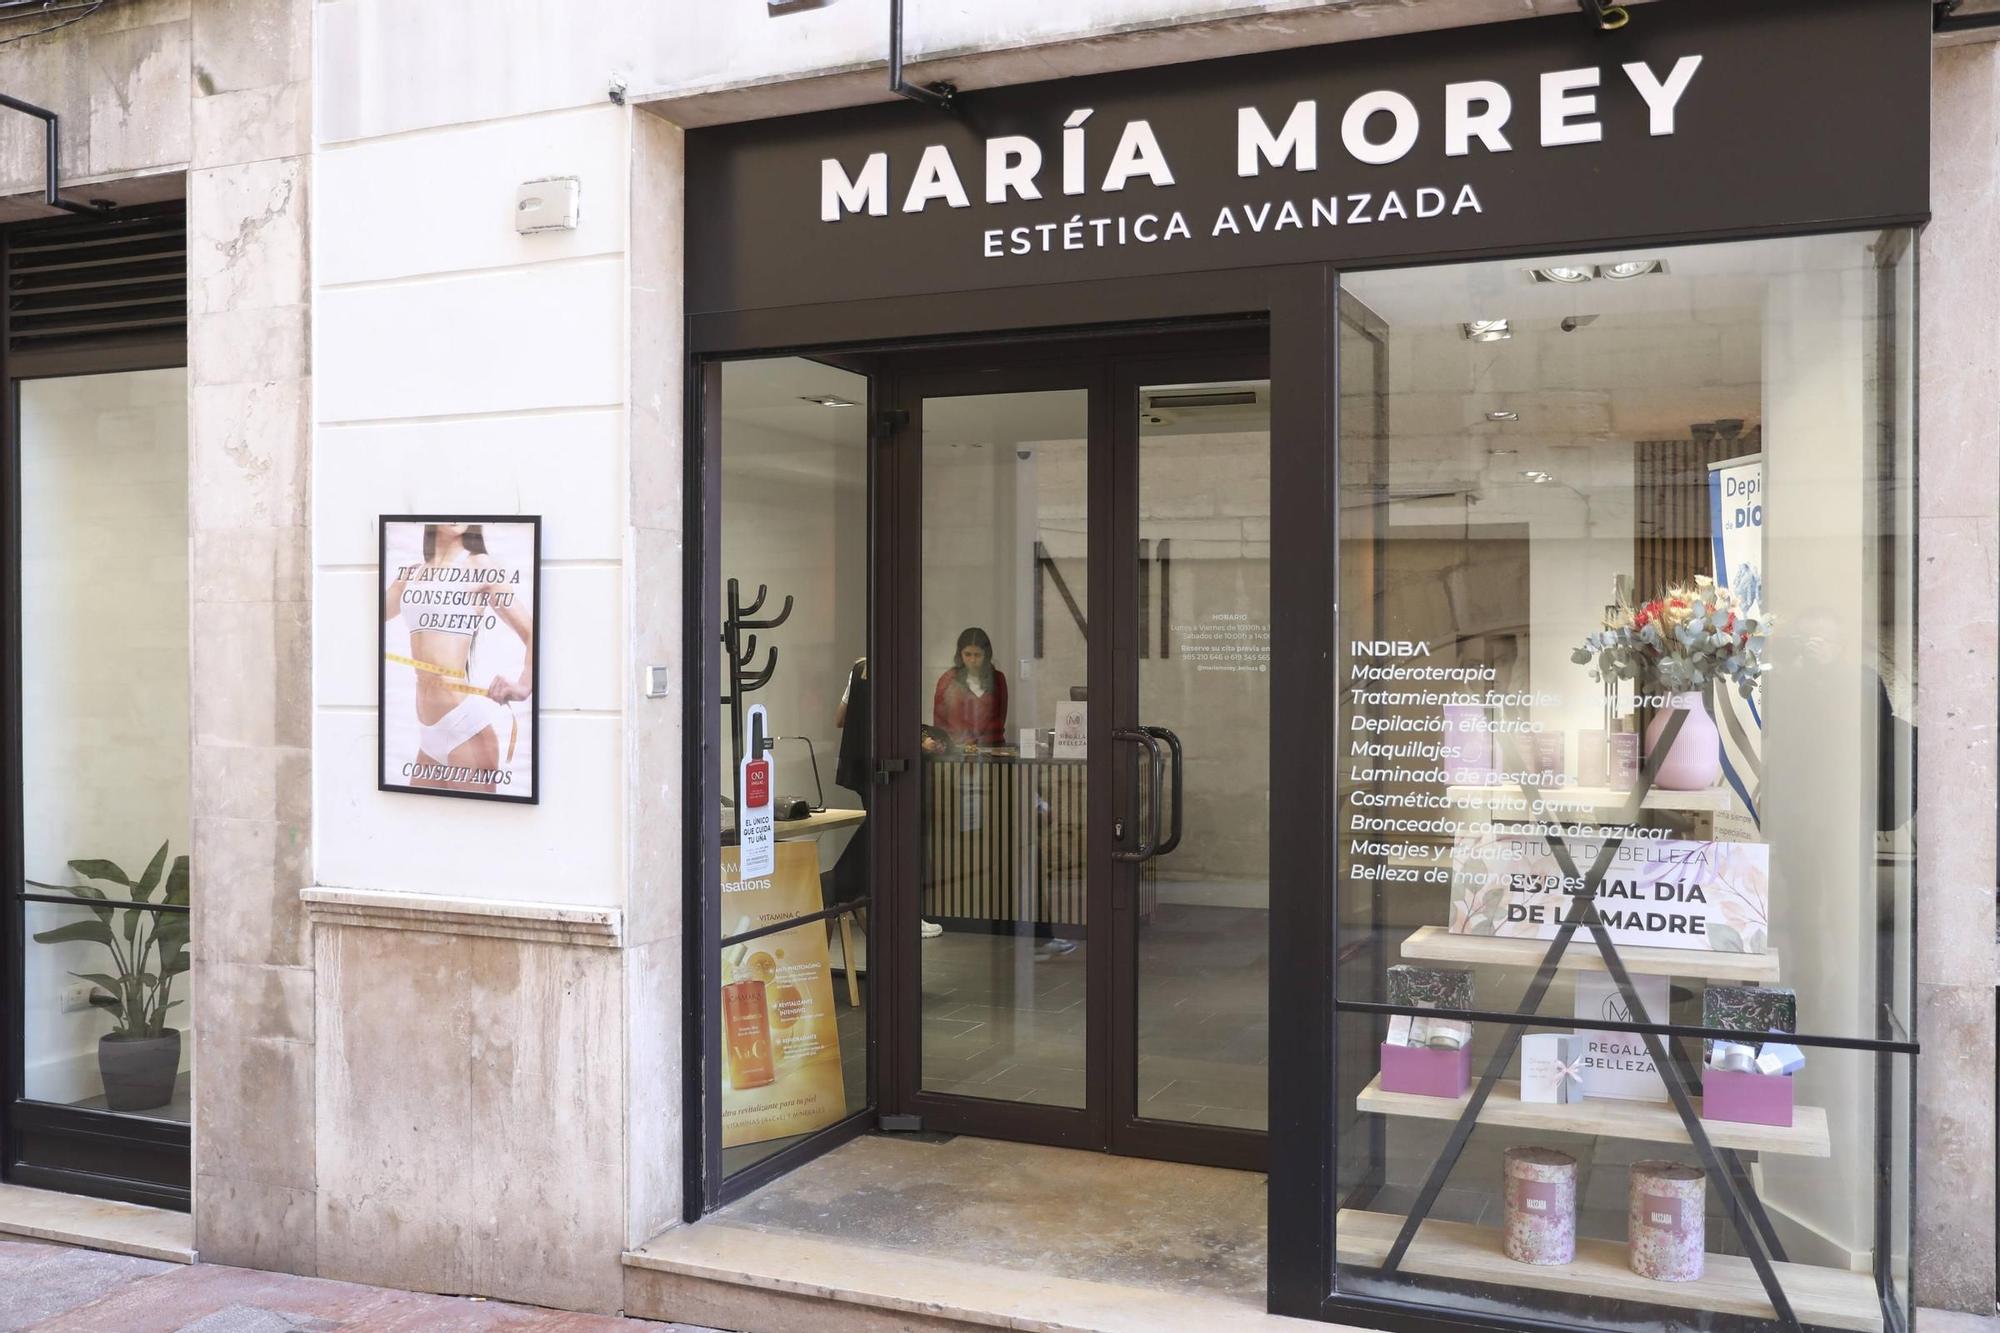 Centro de estética María Morey, regala belleza